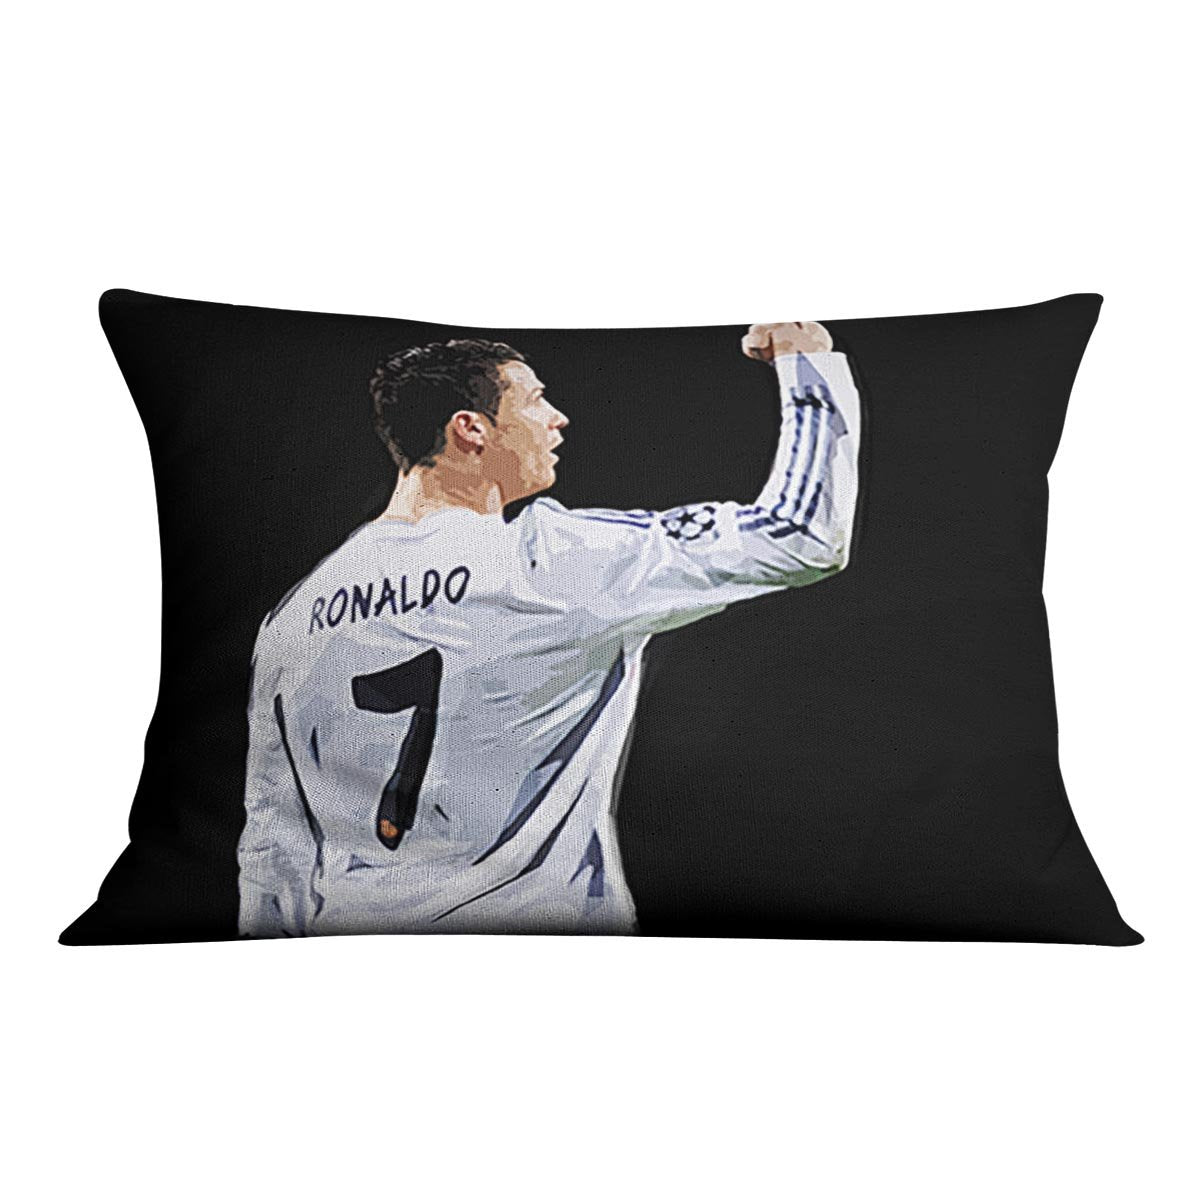 Cristiano Ronaldo Cushion